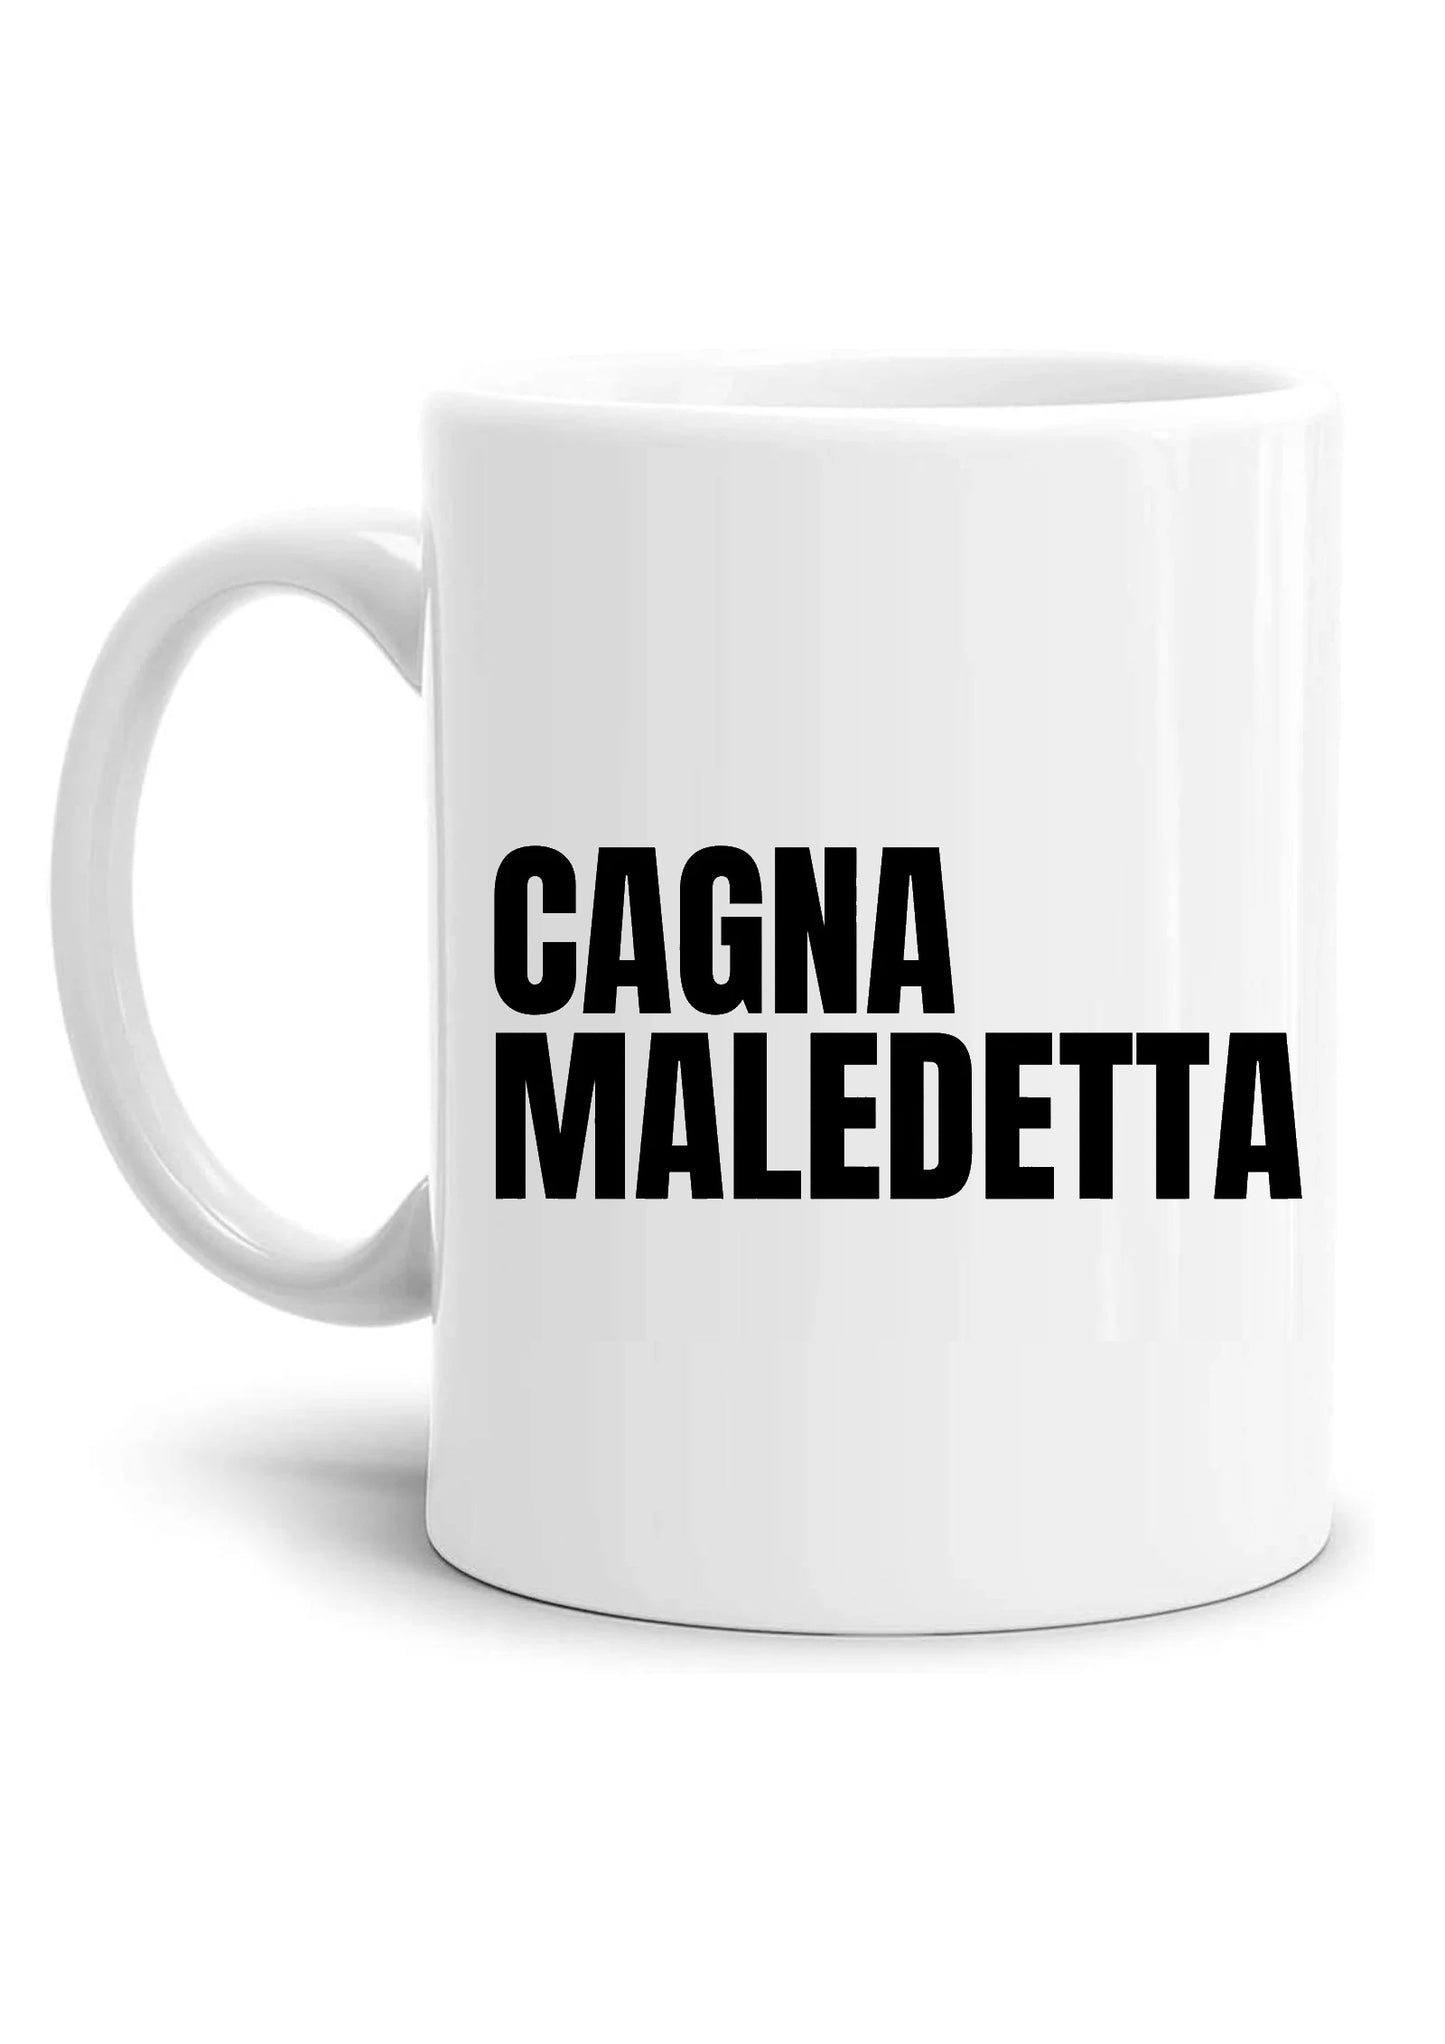 tazza Mug-cagna maledetta serie tivu tv italiana divertente simpatica regalo mamma papa colleghi amici in ceramica per la colazione caffe o te copia copia